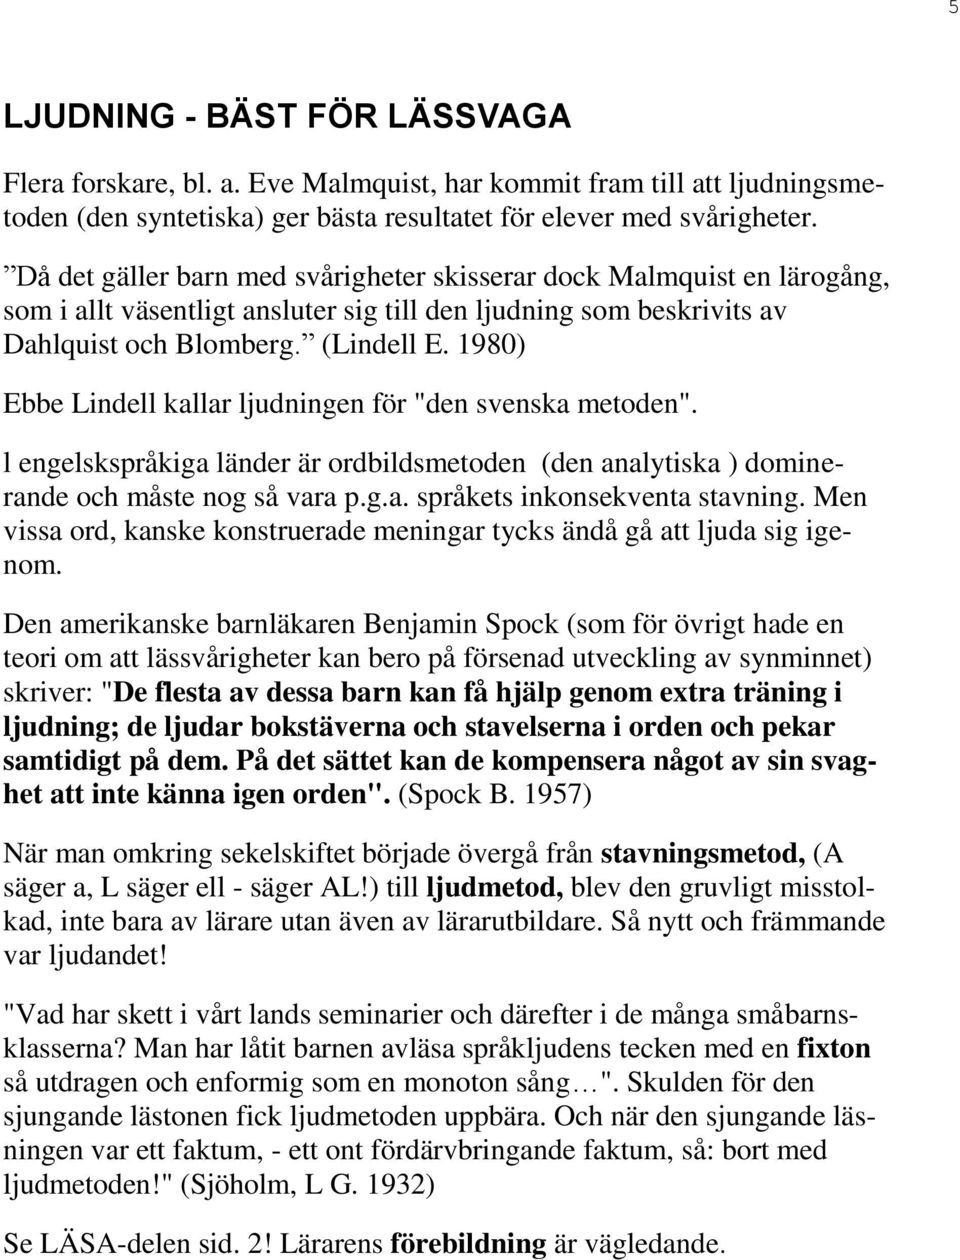 1980) Ebbe Lindell kallar ljudningen för "den svenska metoden". l engelskspråkiga länder är ordbildsmetoden (den analytiska ) dominerande och måste nog så vara p.g.a. språkets inkonsekventa stavning.